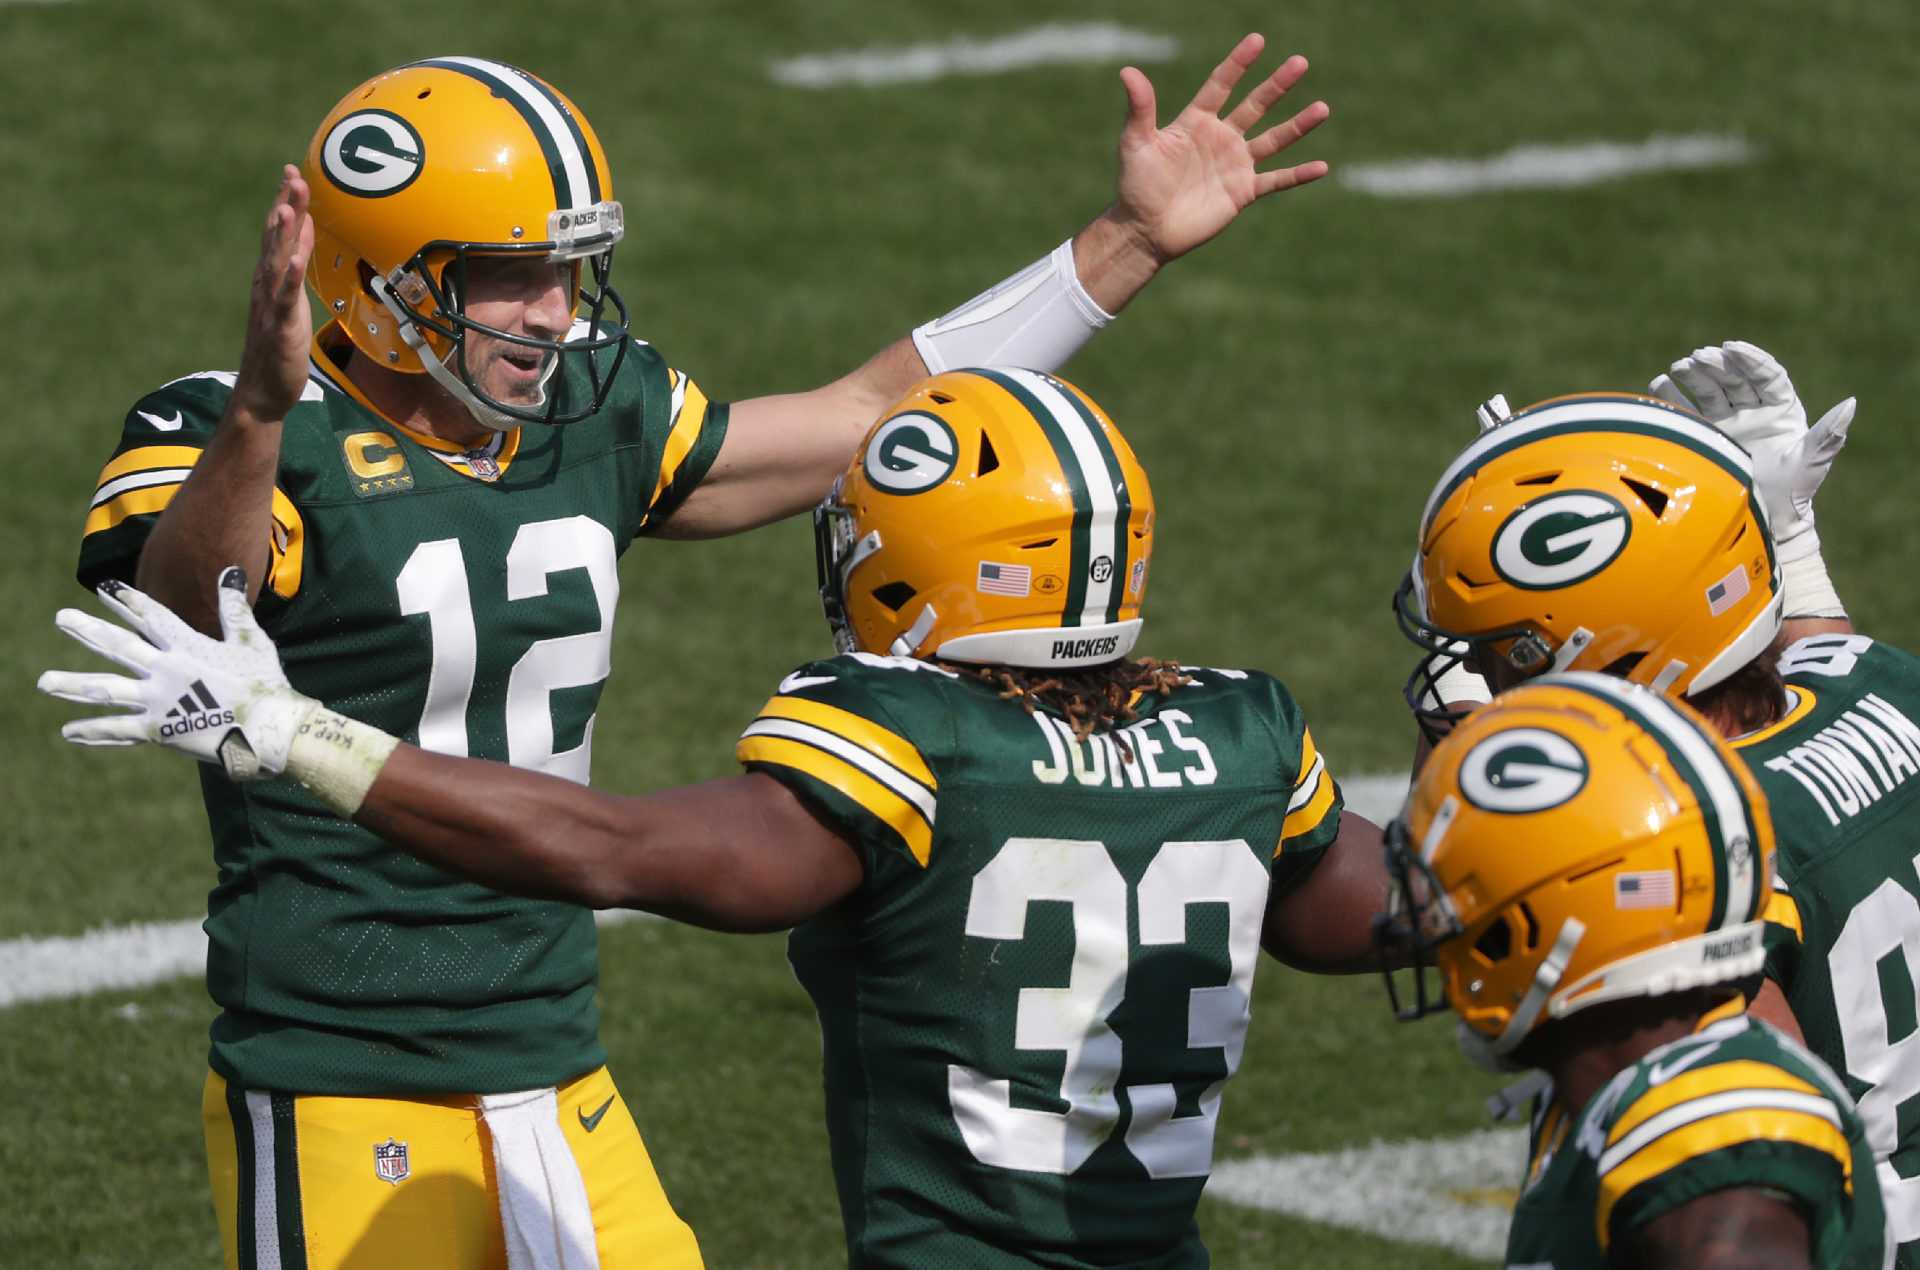 Un ancien coéquipier affirme qu'Aaron Rodgers était la raison pour laquelle Aaron Jones a renoué avec les Packers